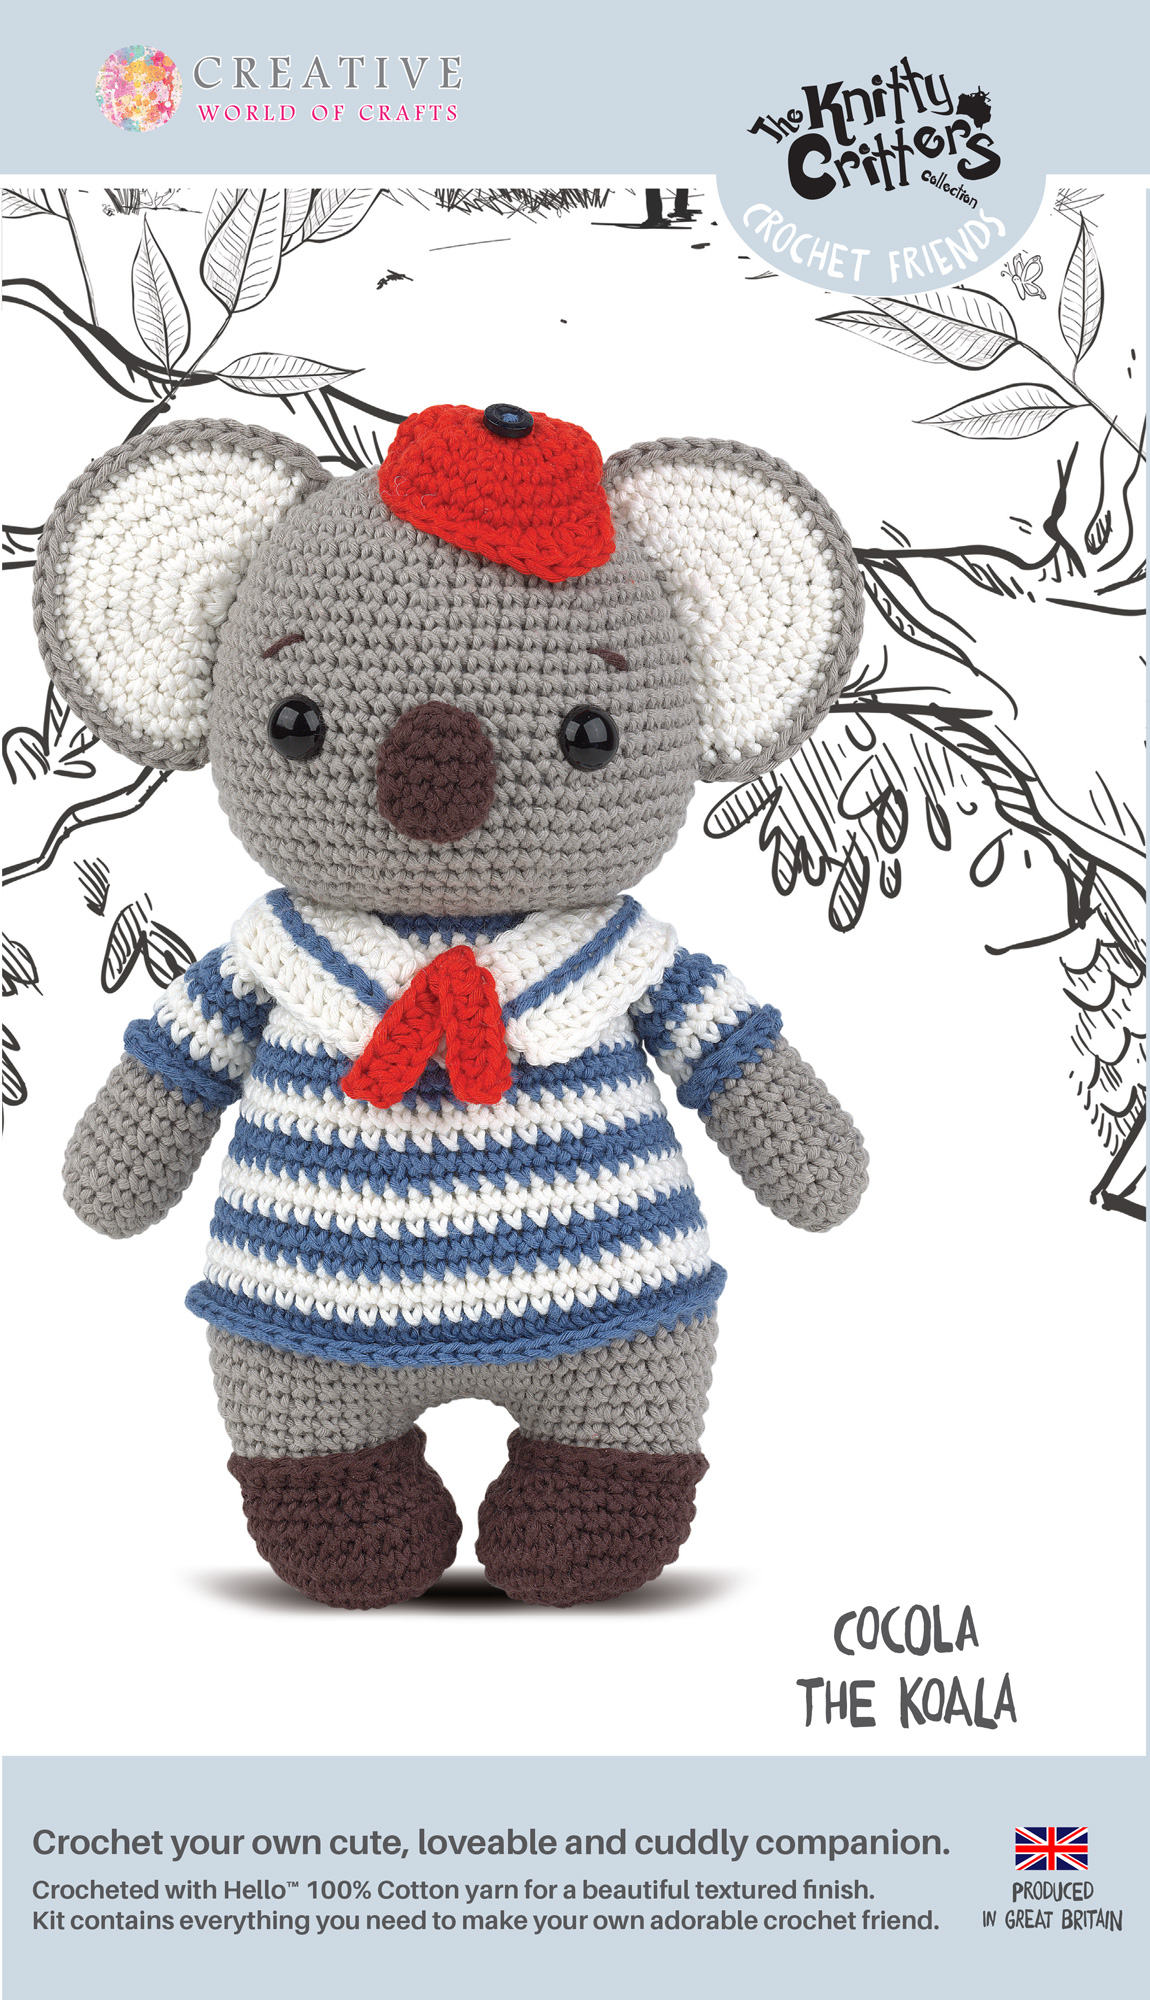 Knitty Critters - Crochet Friends - Cocola The Koala